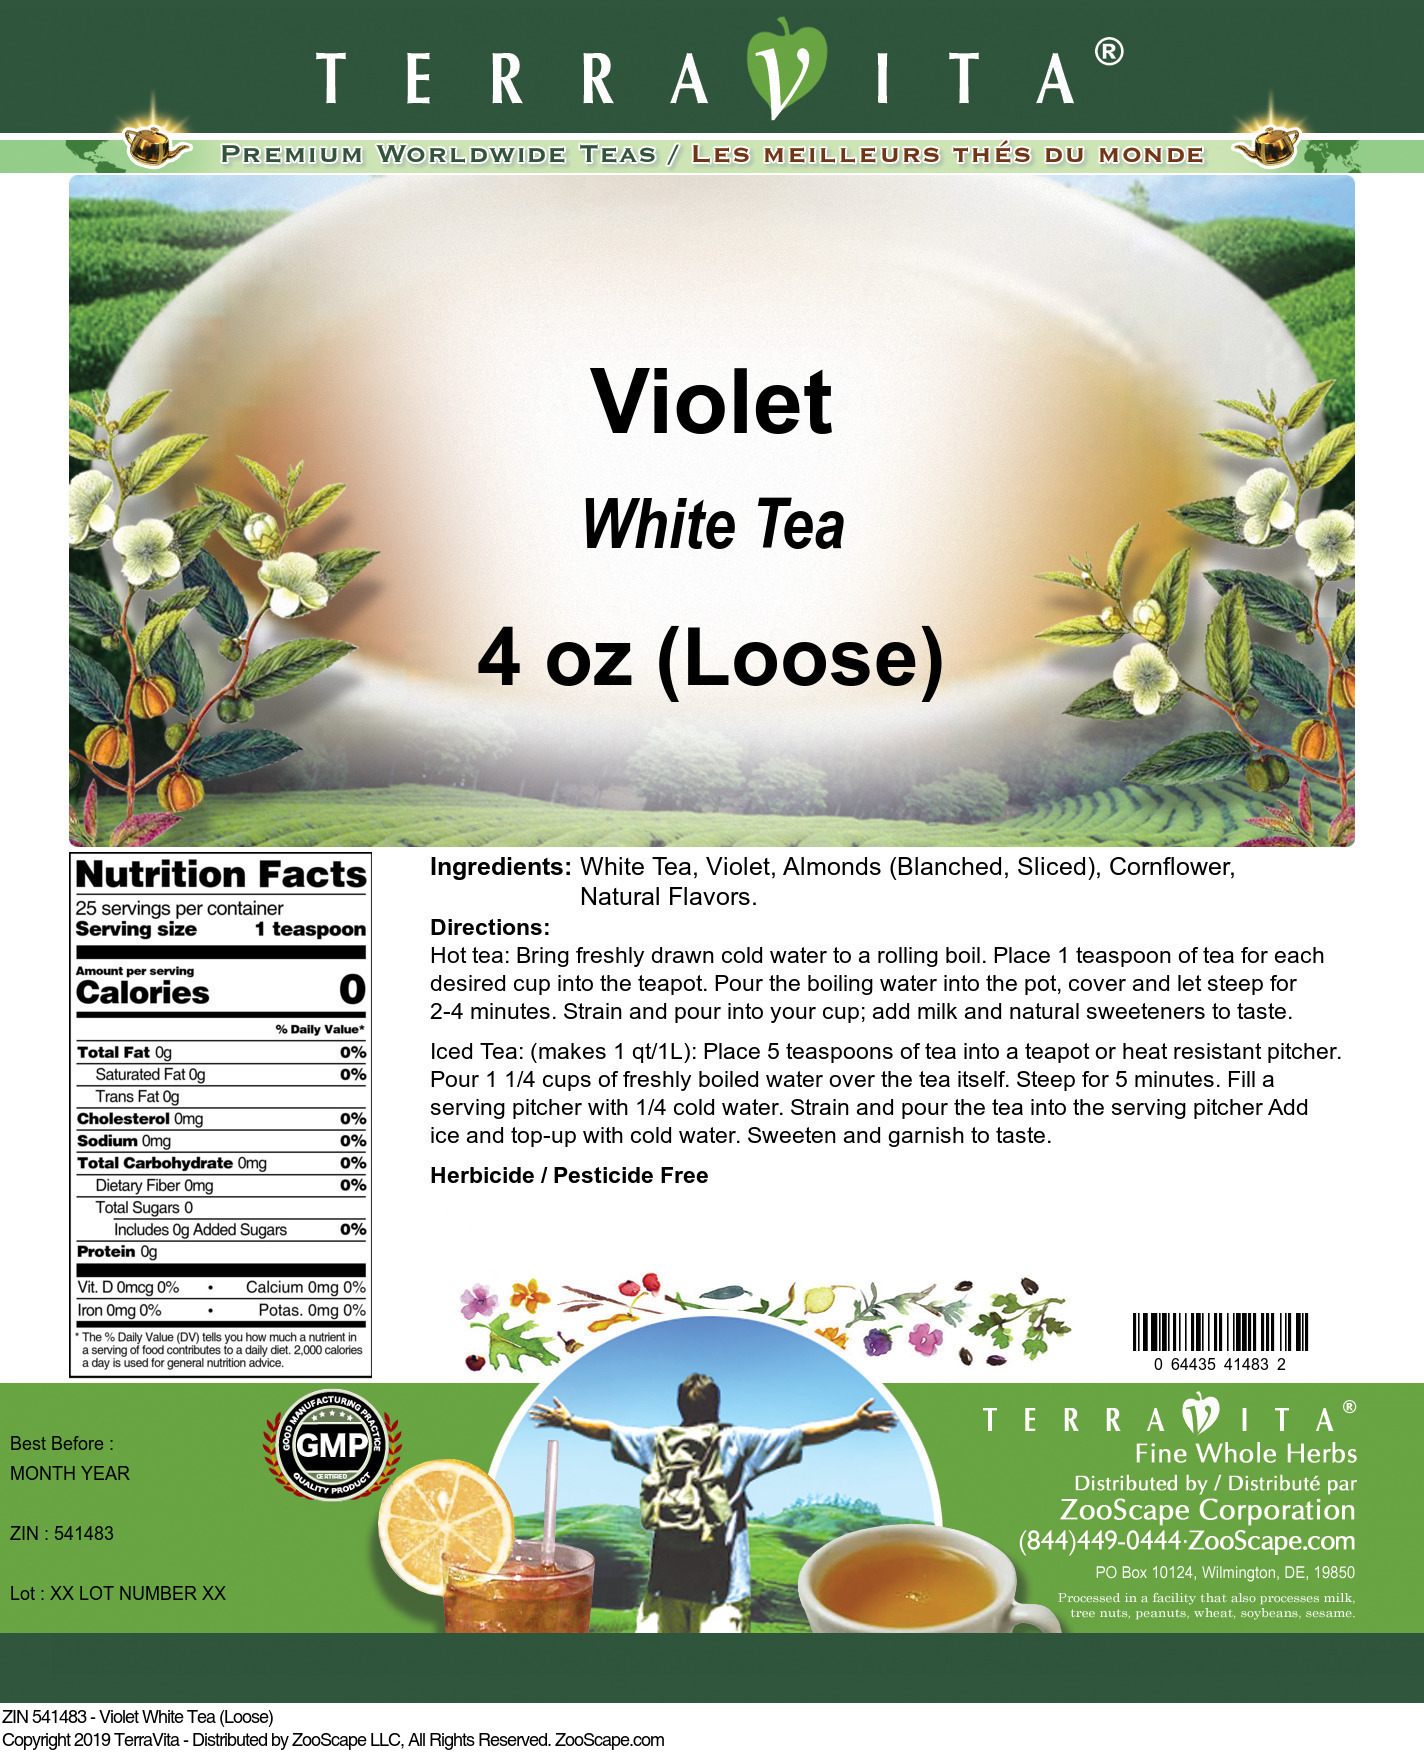 Violet White Tea (Loose) - Label